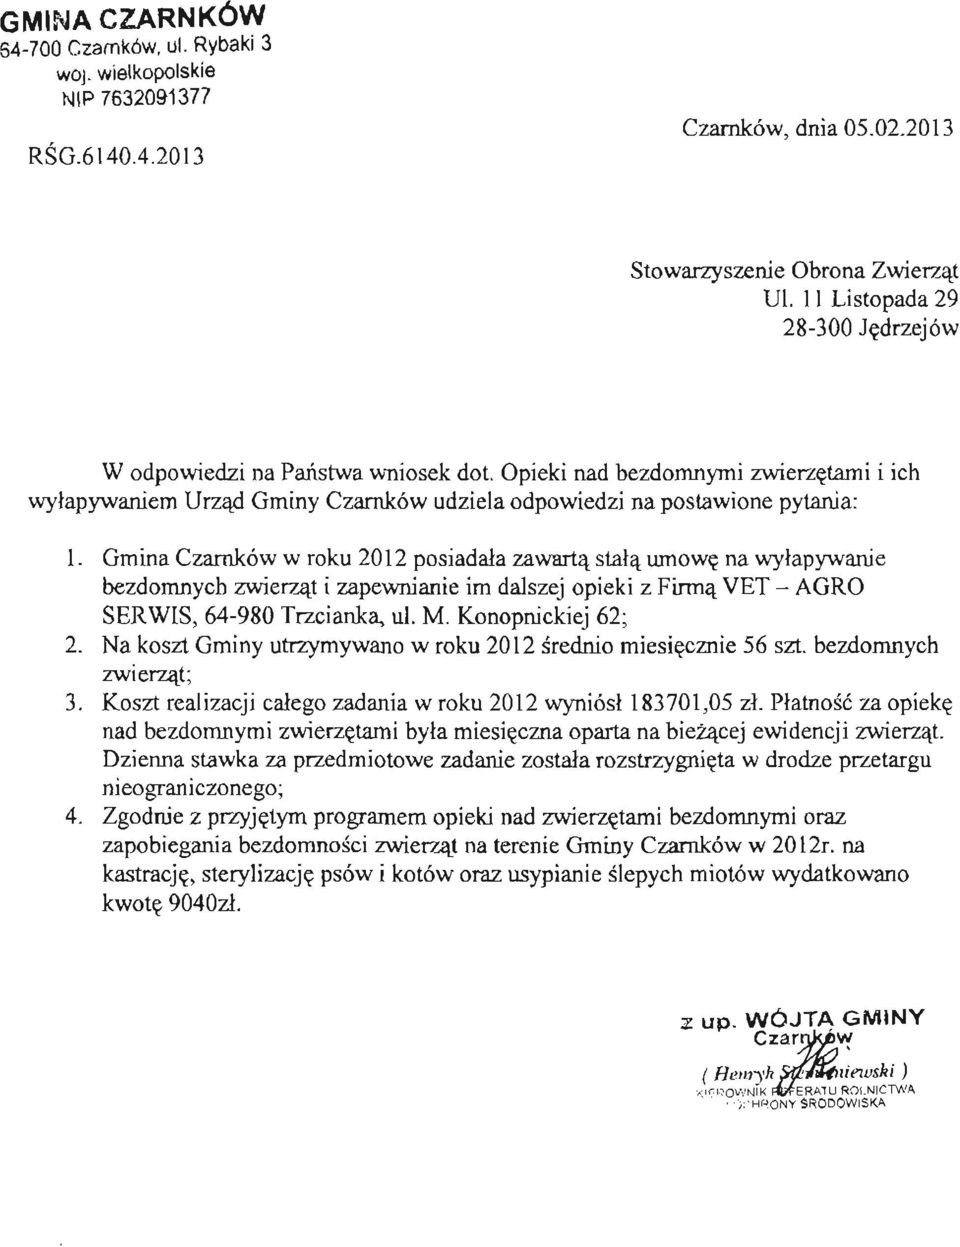 Gmina Czarnków w roku 2012 posiadała zawartą stałą umowę na wyłapywanie bezdomnych zwierząt i zapewnianie im dalszej opieki z Firmą VET - AGRO SERWIS, 64-980 Trzcianka, ul. M. Konopnickiej 62; 2.